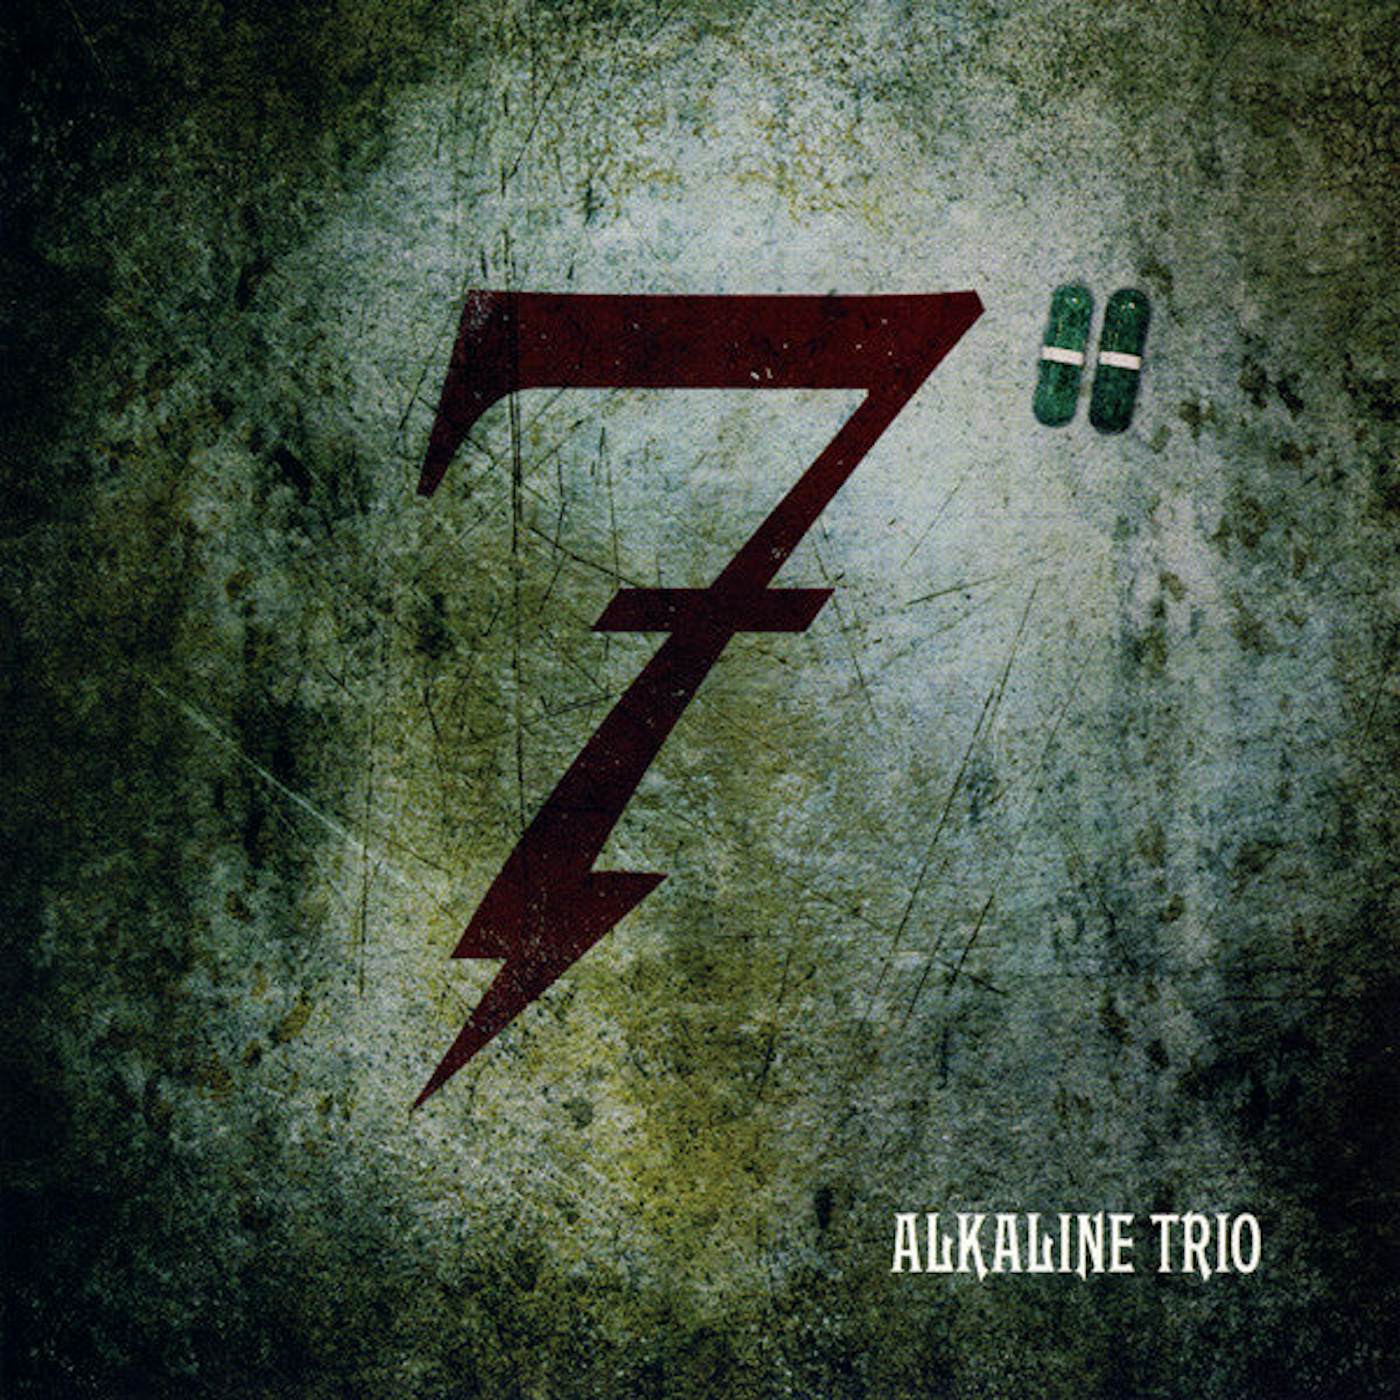 Alkaline Trio "This Addiction" 7"